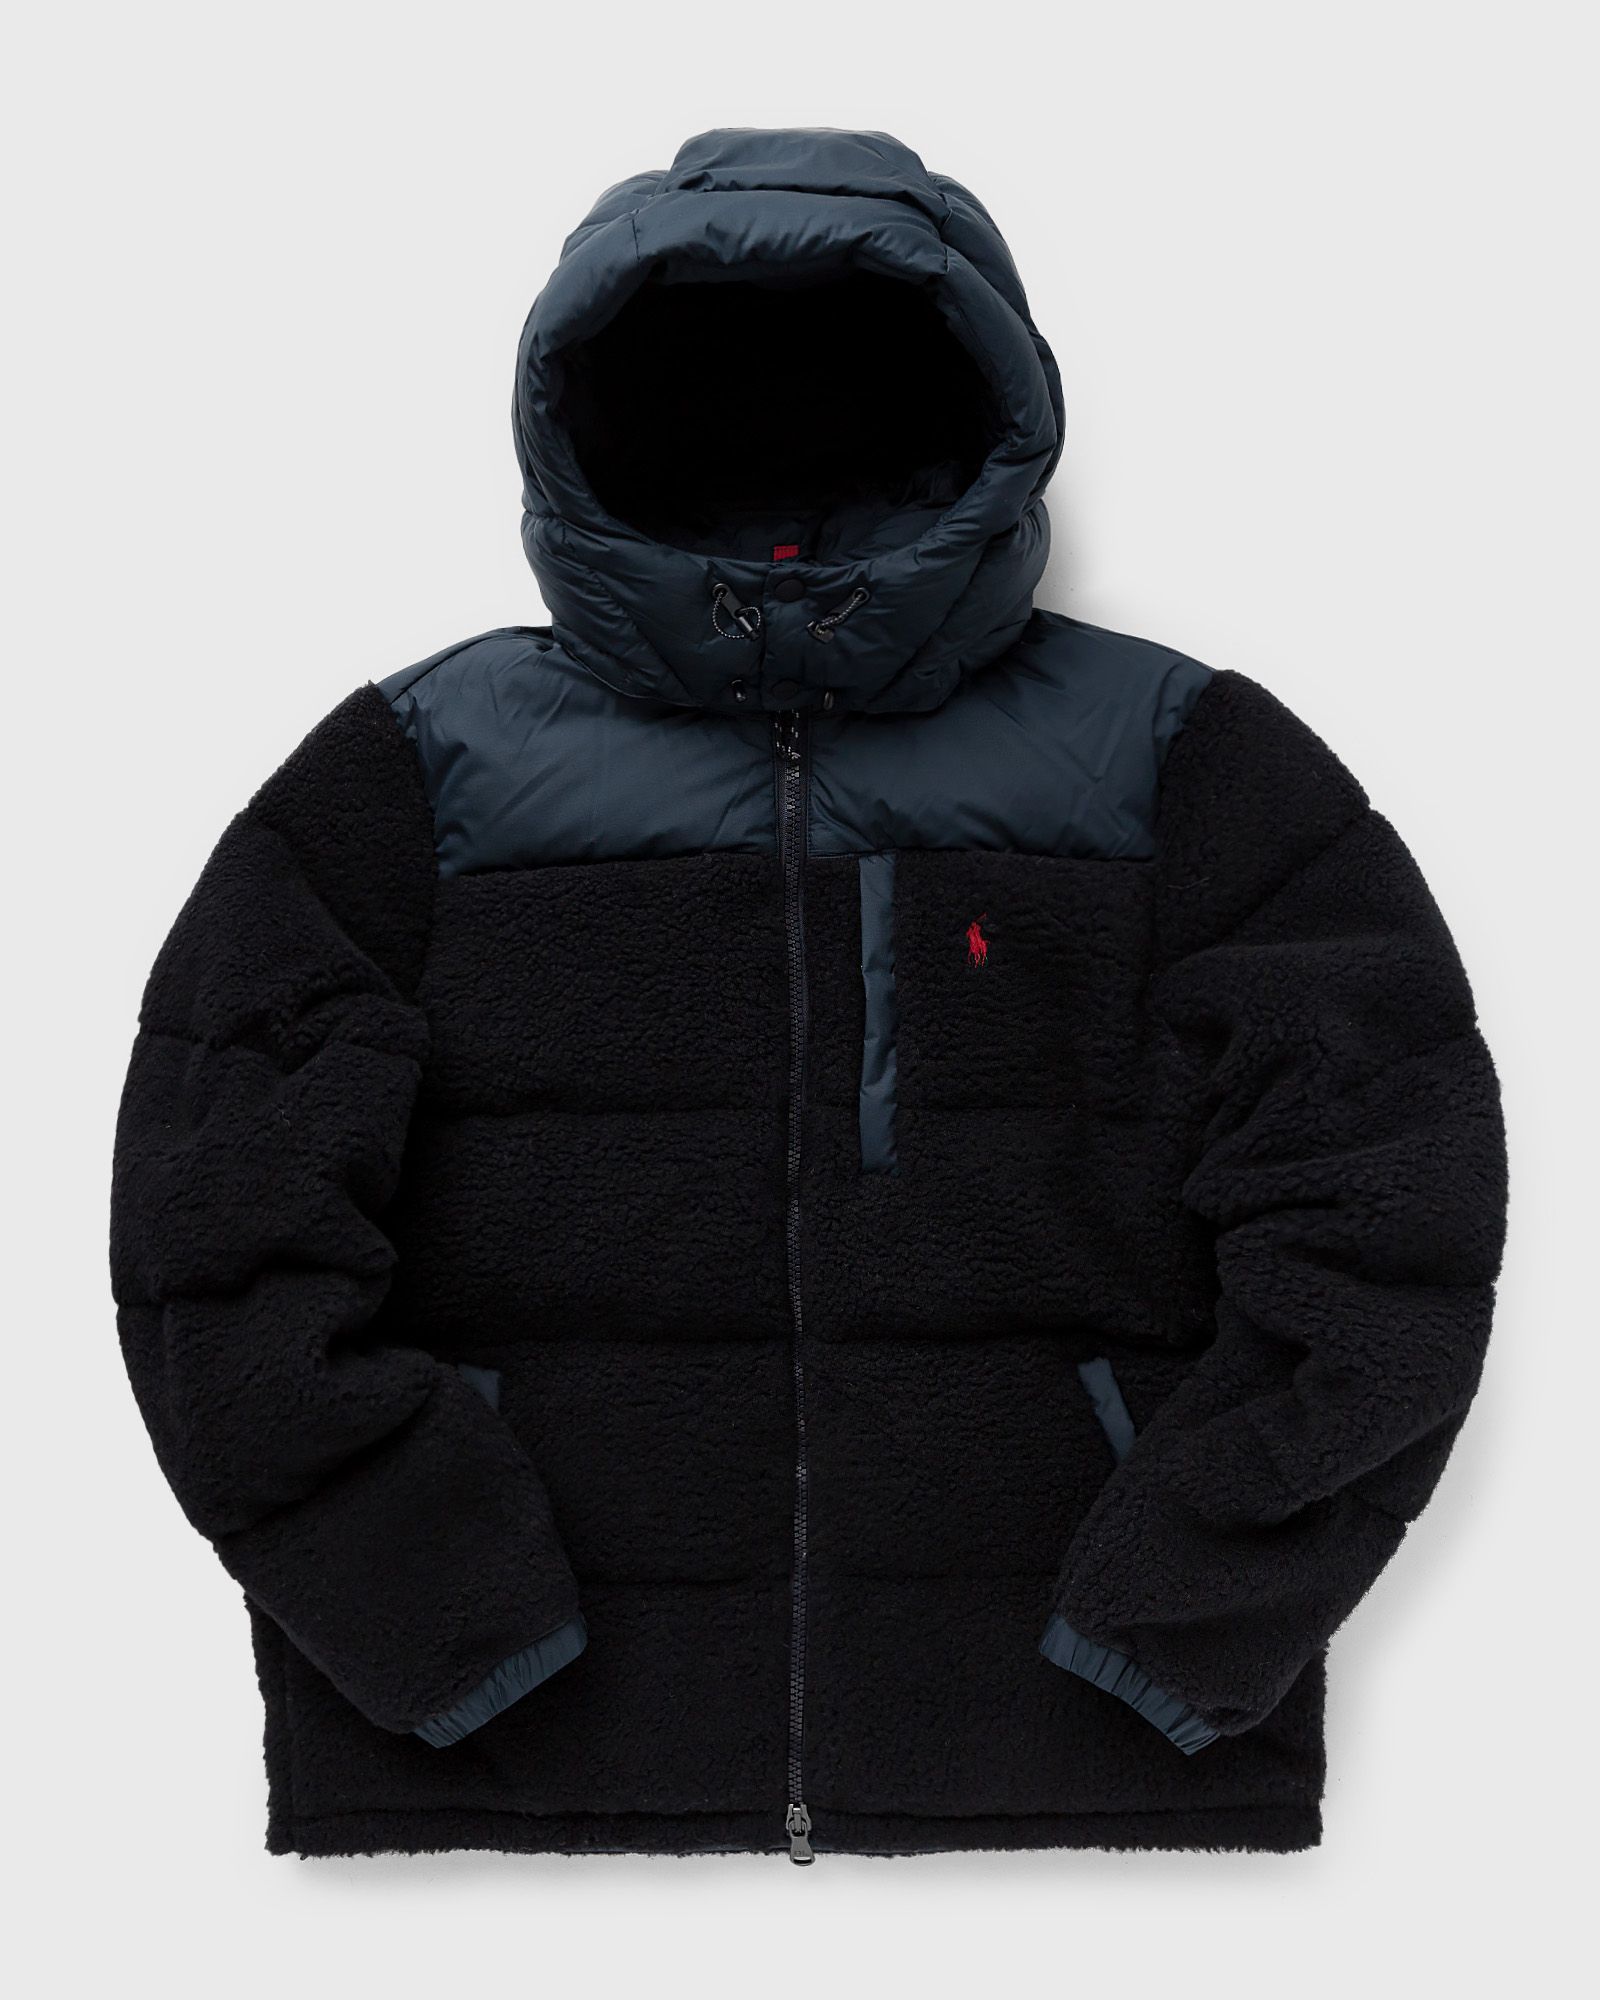 Polo Ralph Lauren - hipile elcap-insulated-coat men down & puffer jackets|fleece jackets blue in größe:xxl